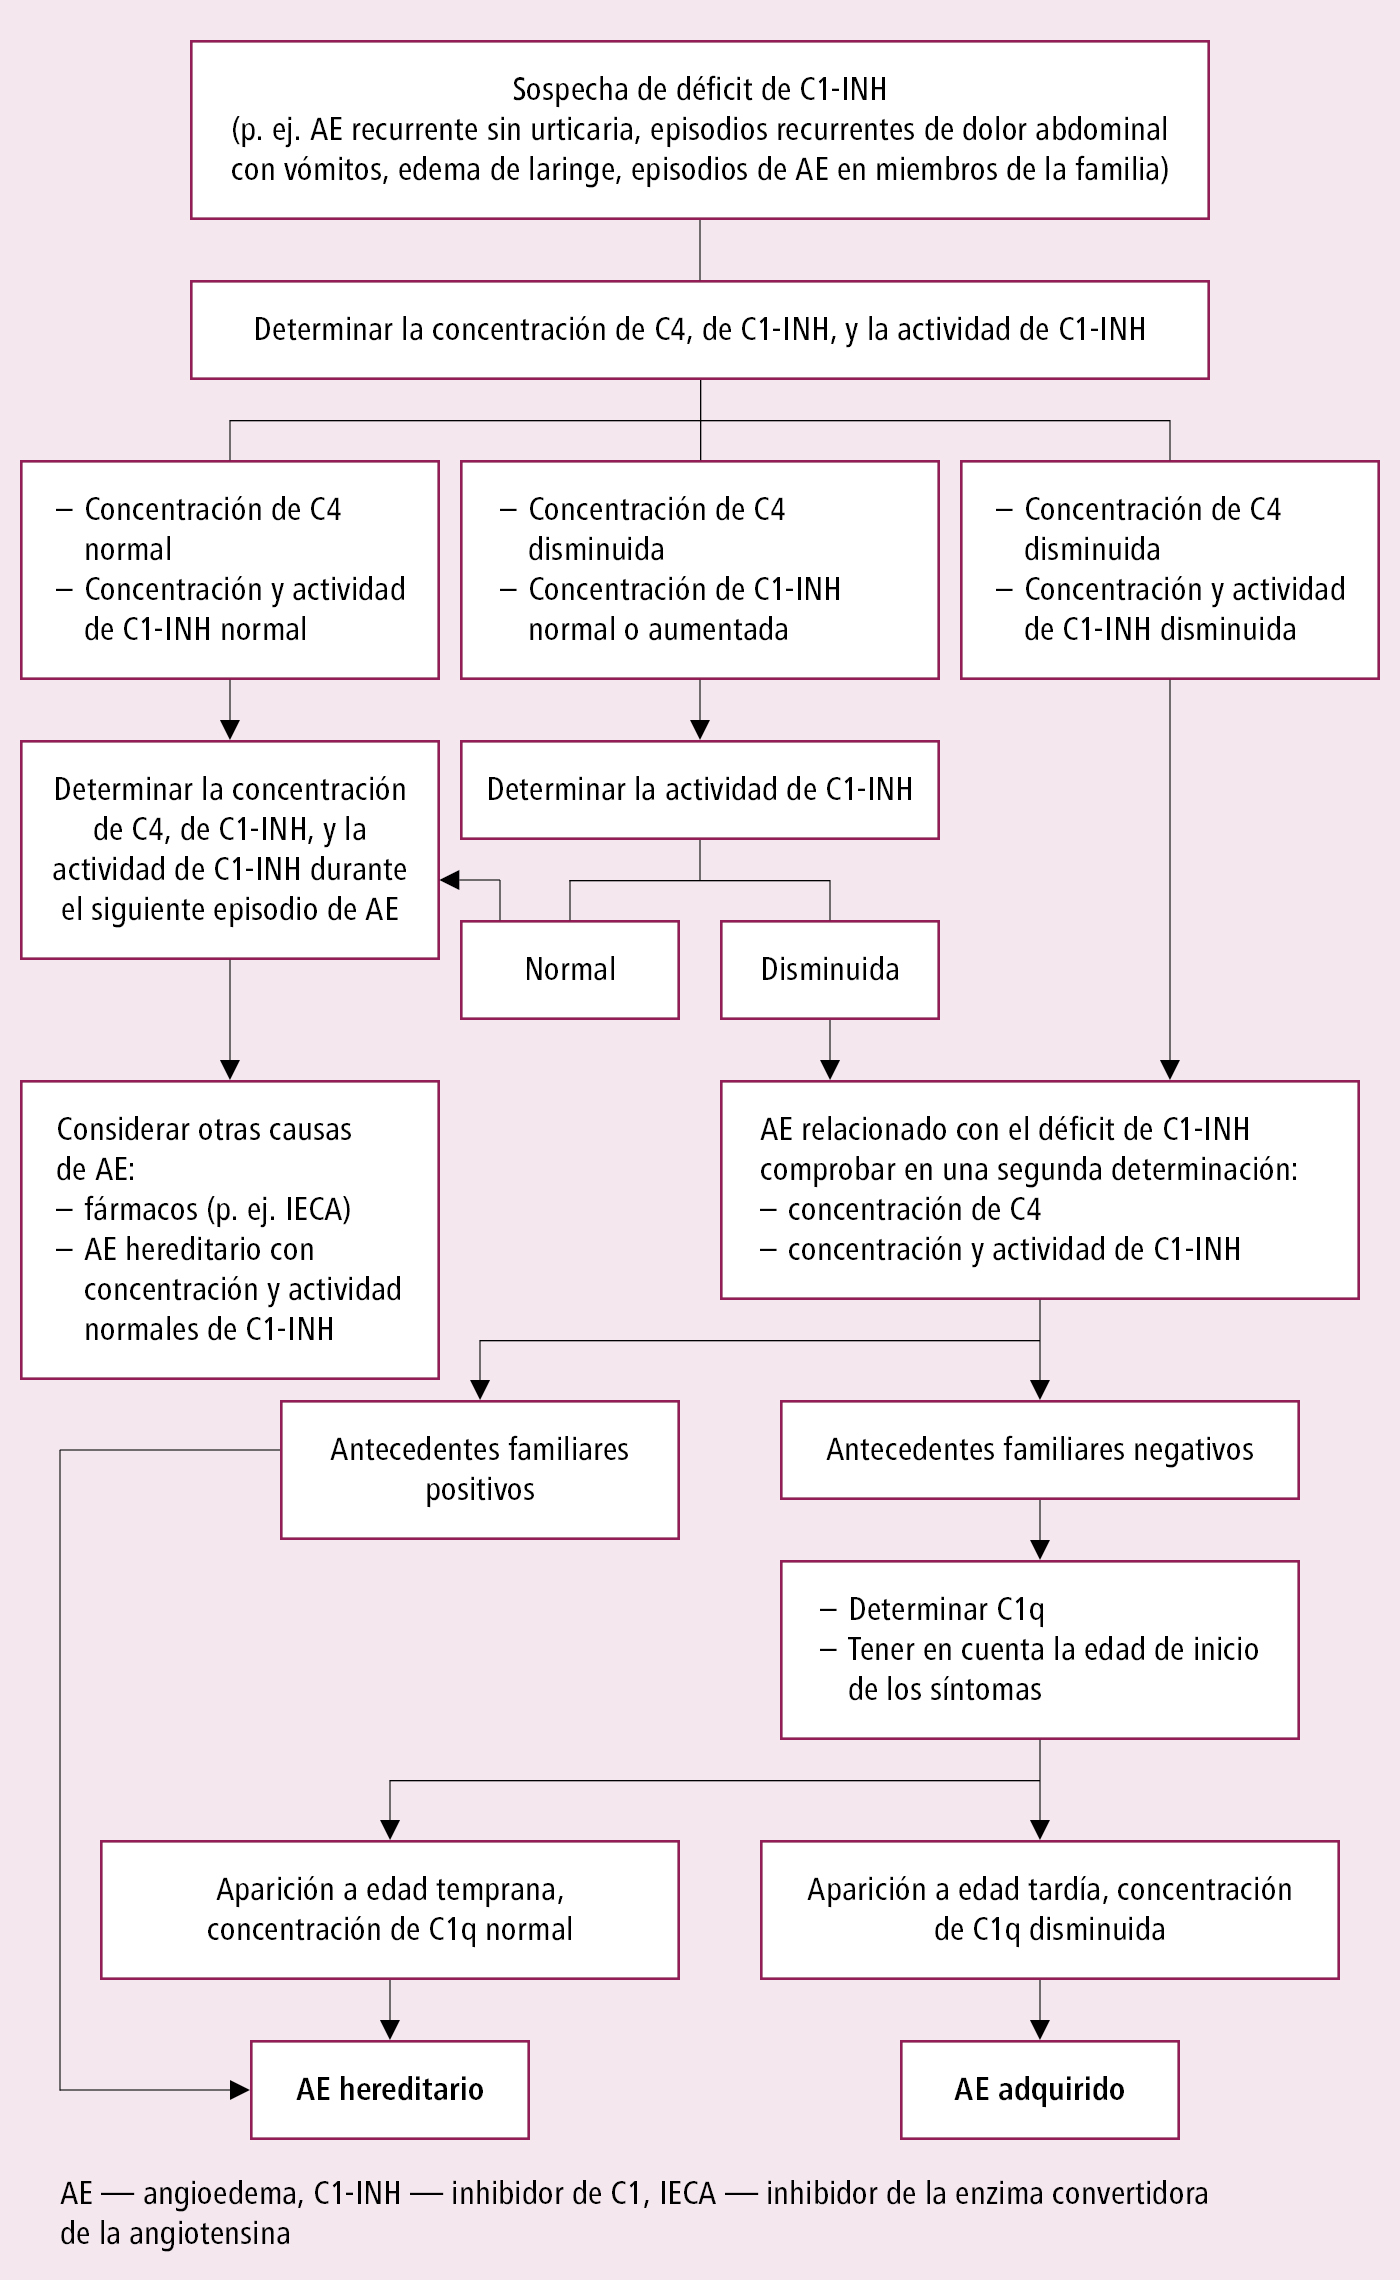    Fig. 18.5-2.  Algoritmo diagnóstico en caso de sospecha de déficit de inhibidor C1 (C1-INH) como causa de angioedema 